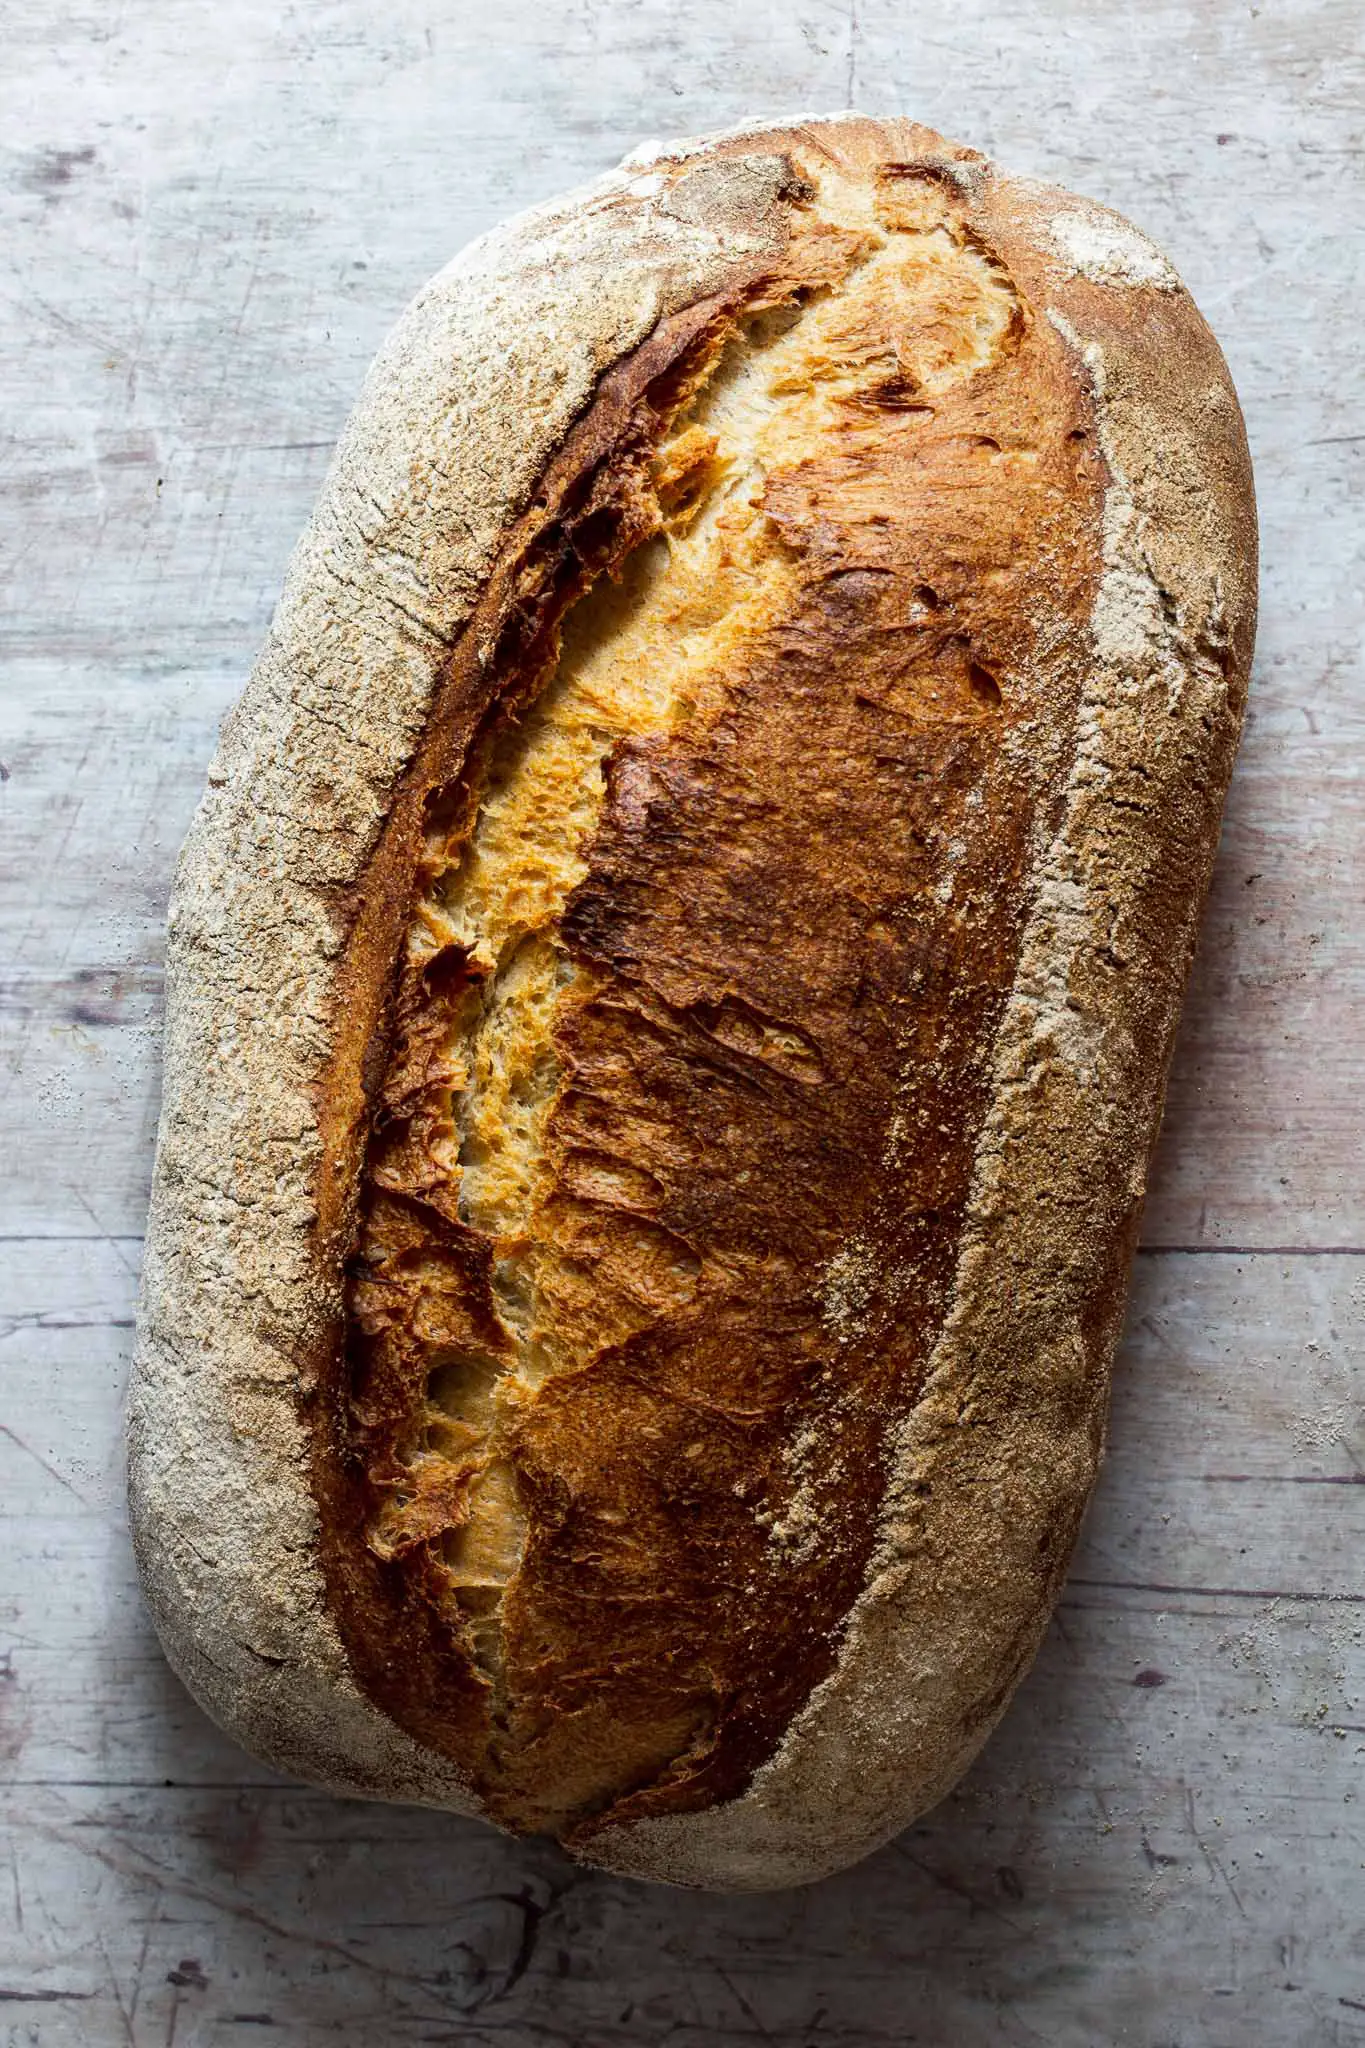 Swabian Country Bread (‘Schwäbisches Landbrot’)